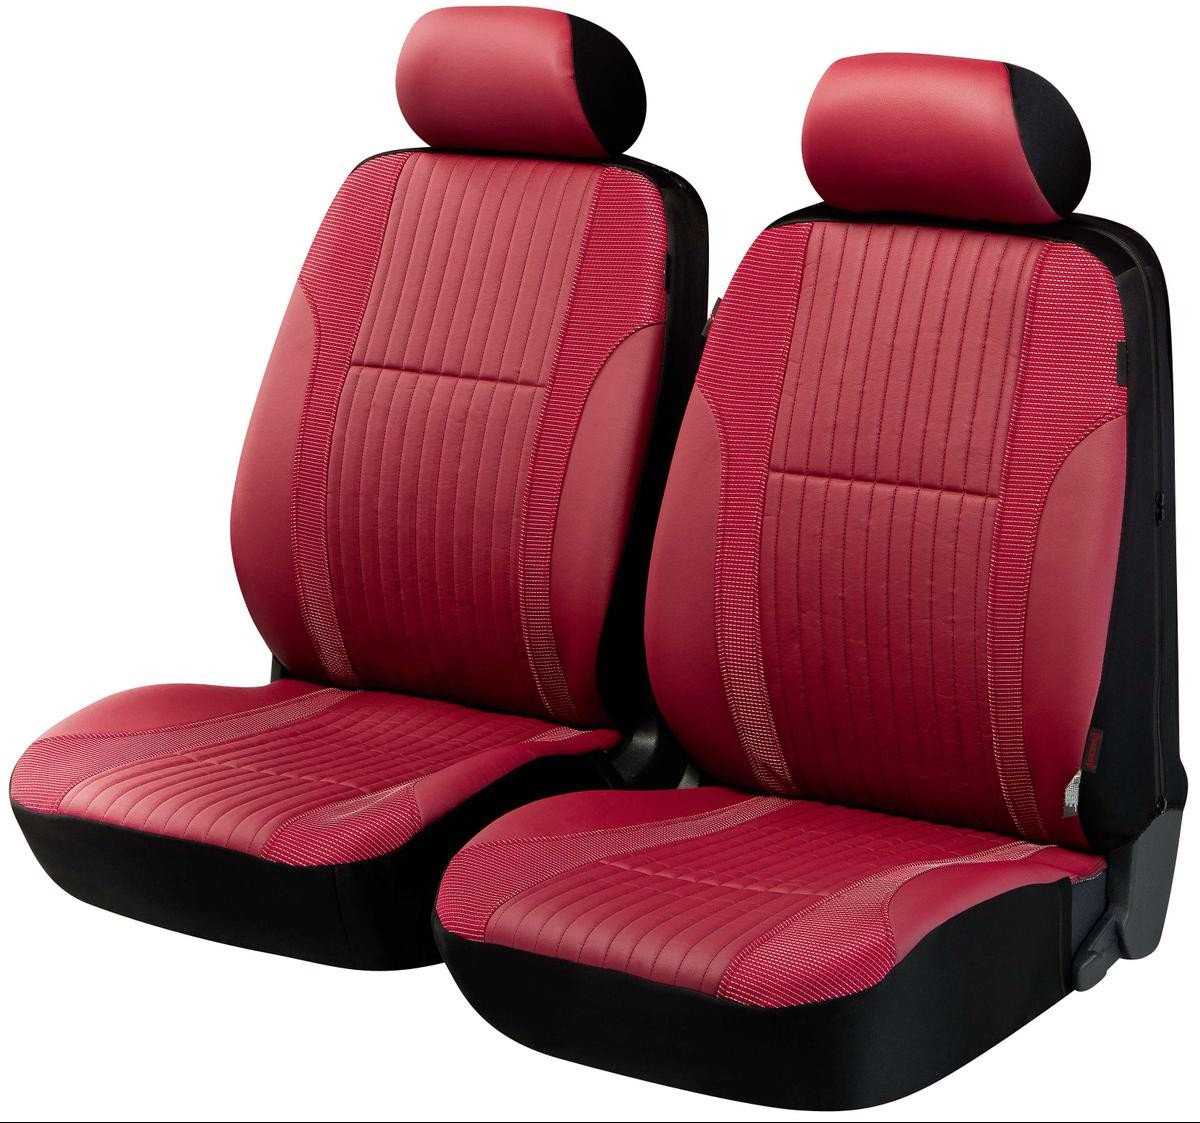 WALSER ZIPP Deluxe Autostoelhoes Rood, Polyester, PU (Polyurethaan), Voor ❱❱❱ prijs en ervaring